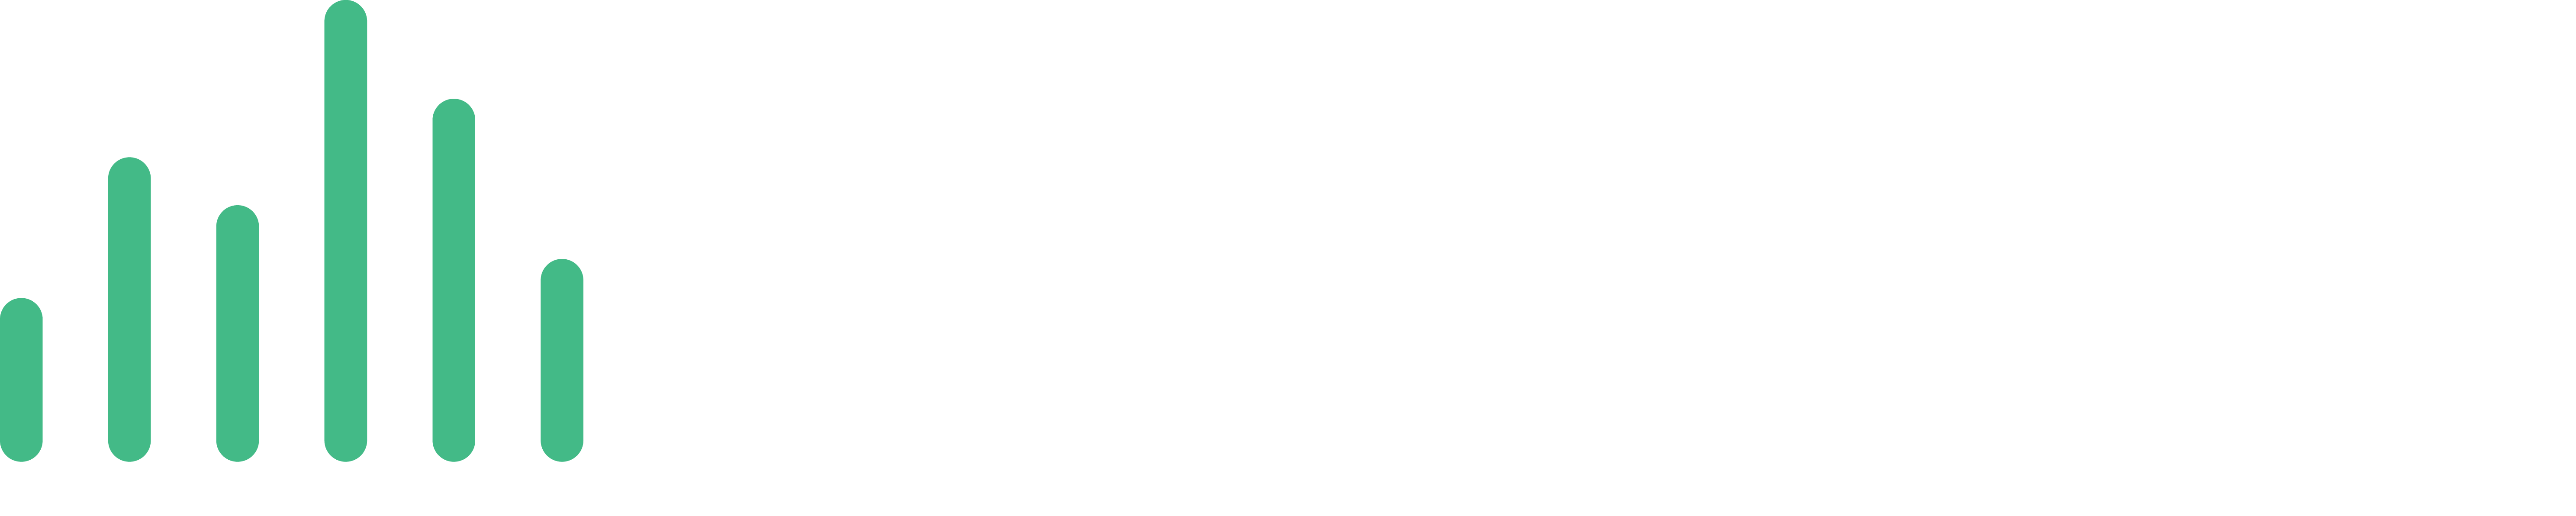 Soundpickr Logo